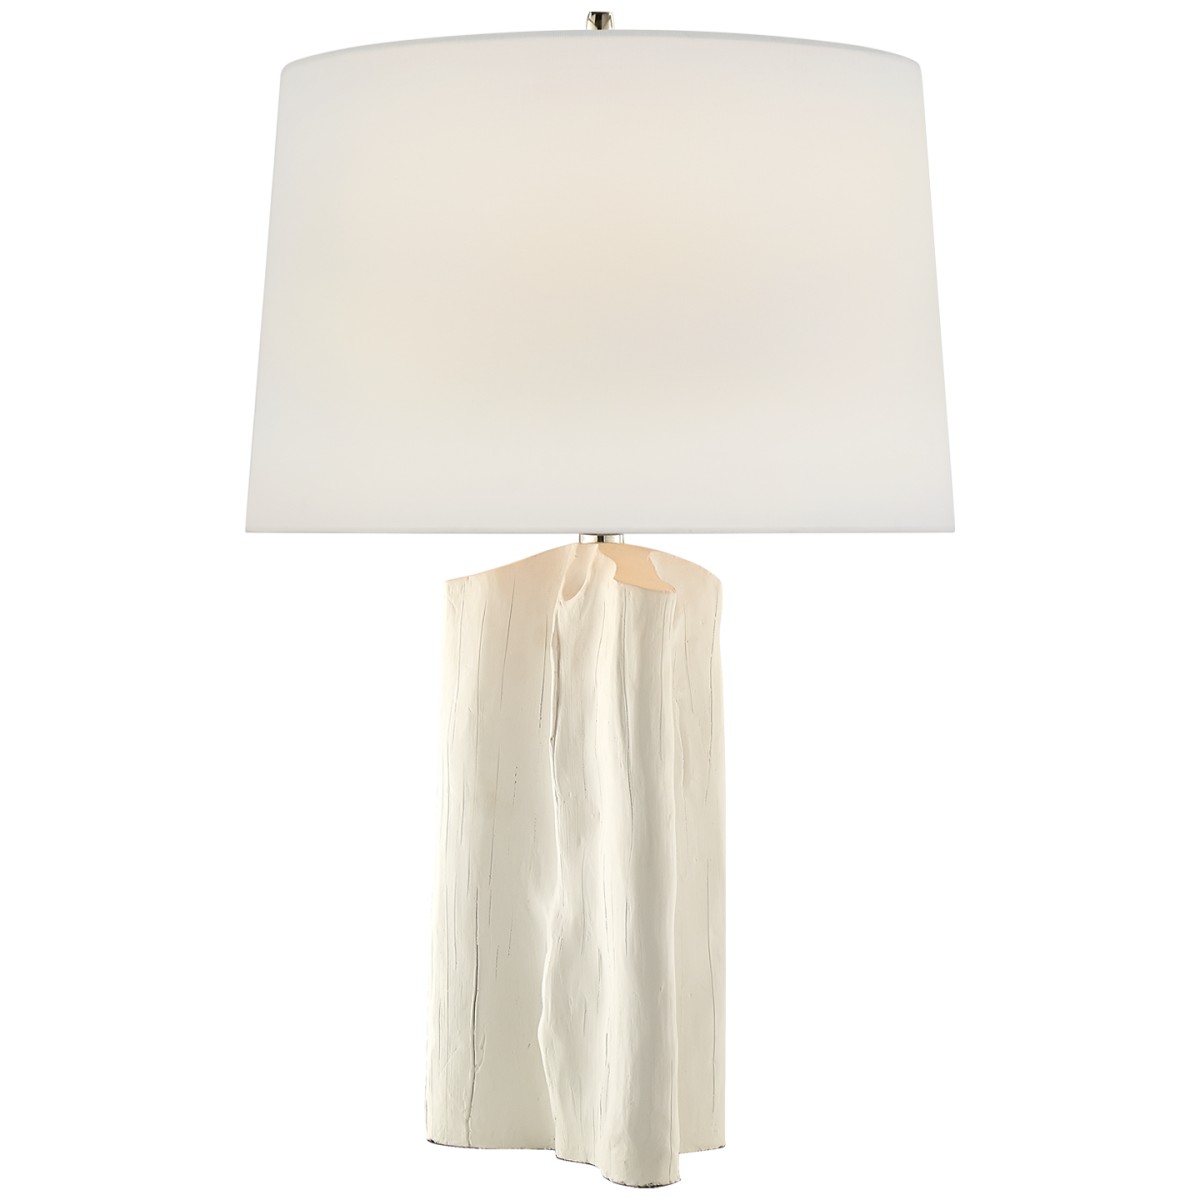 Sierra Buffet Lamp with Linen Shade